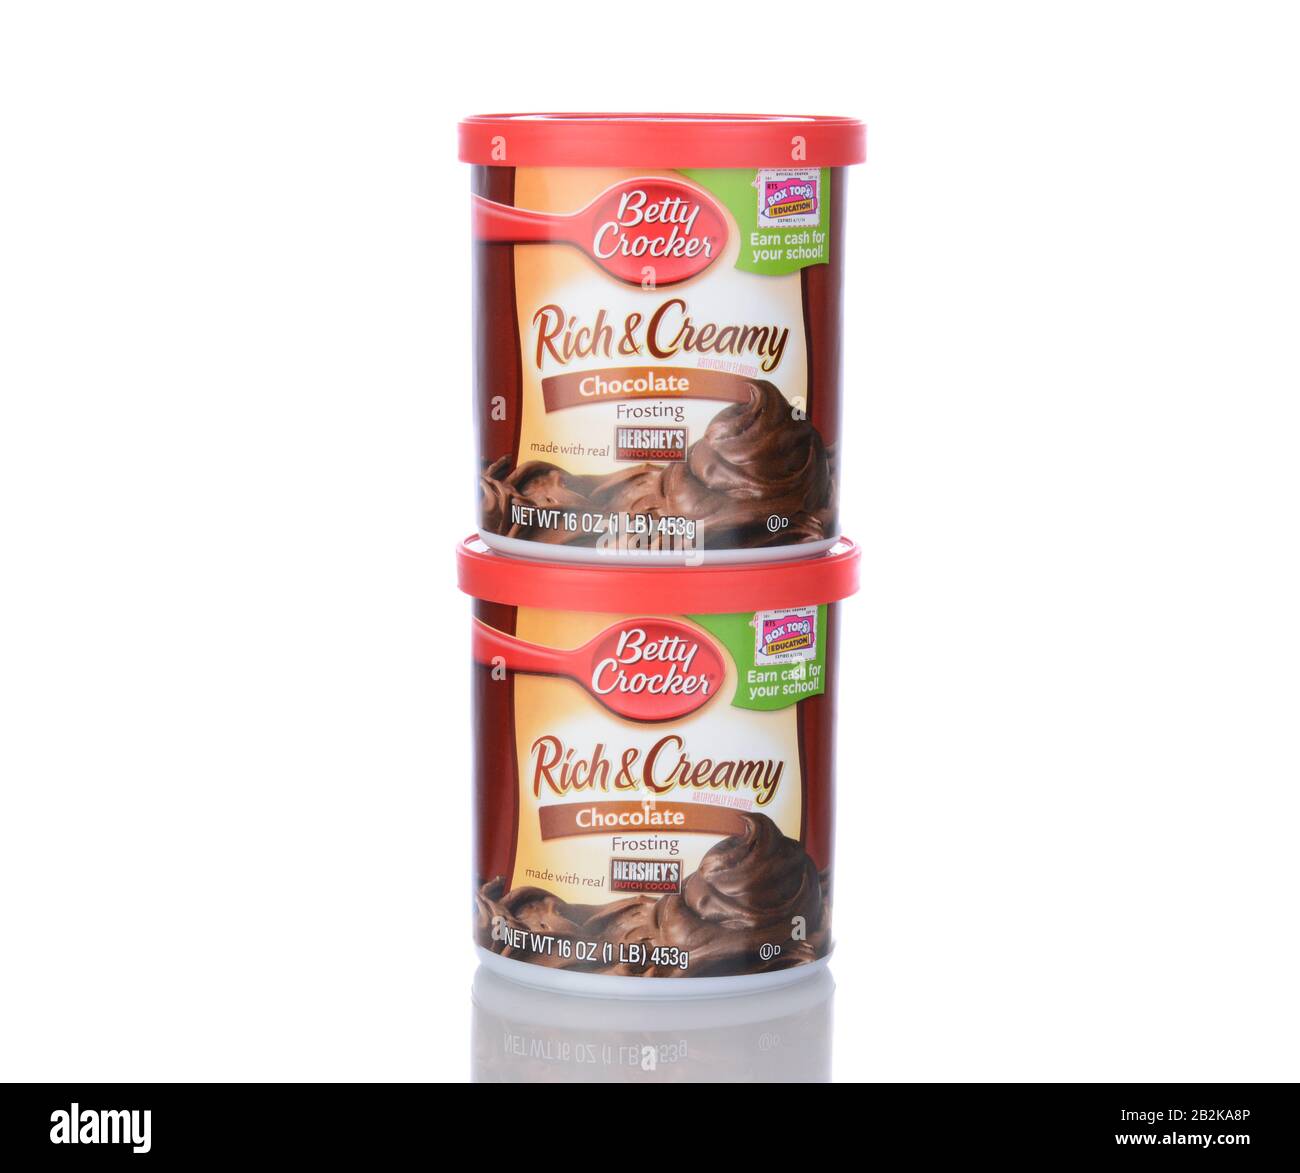 Irvine, CA - 05. Januar 2014: Betty Crocker Rich and Creamy Chocolate Frosting. Betty Crocker ist ein Markenname und eine Marke von General Mills. Stockfoto